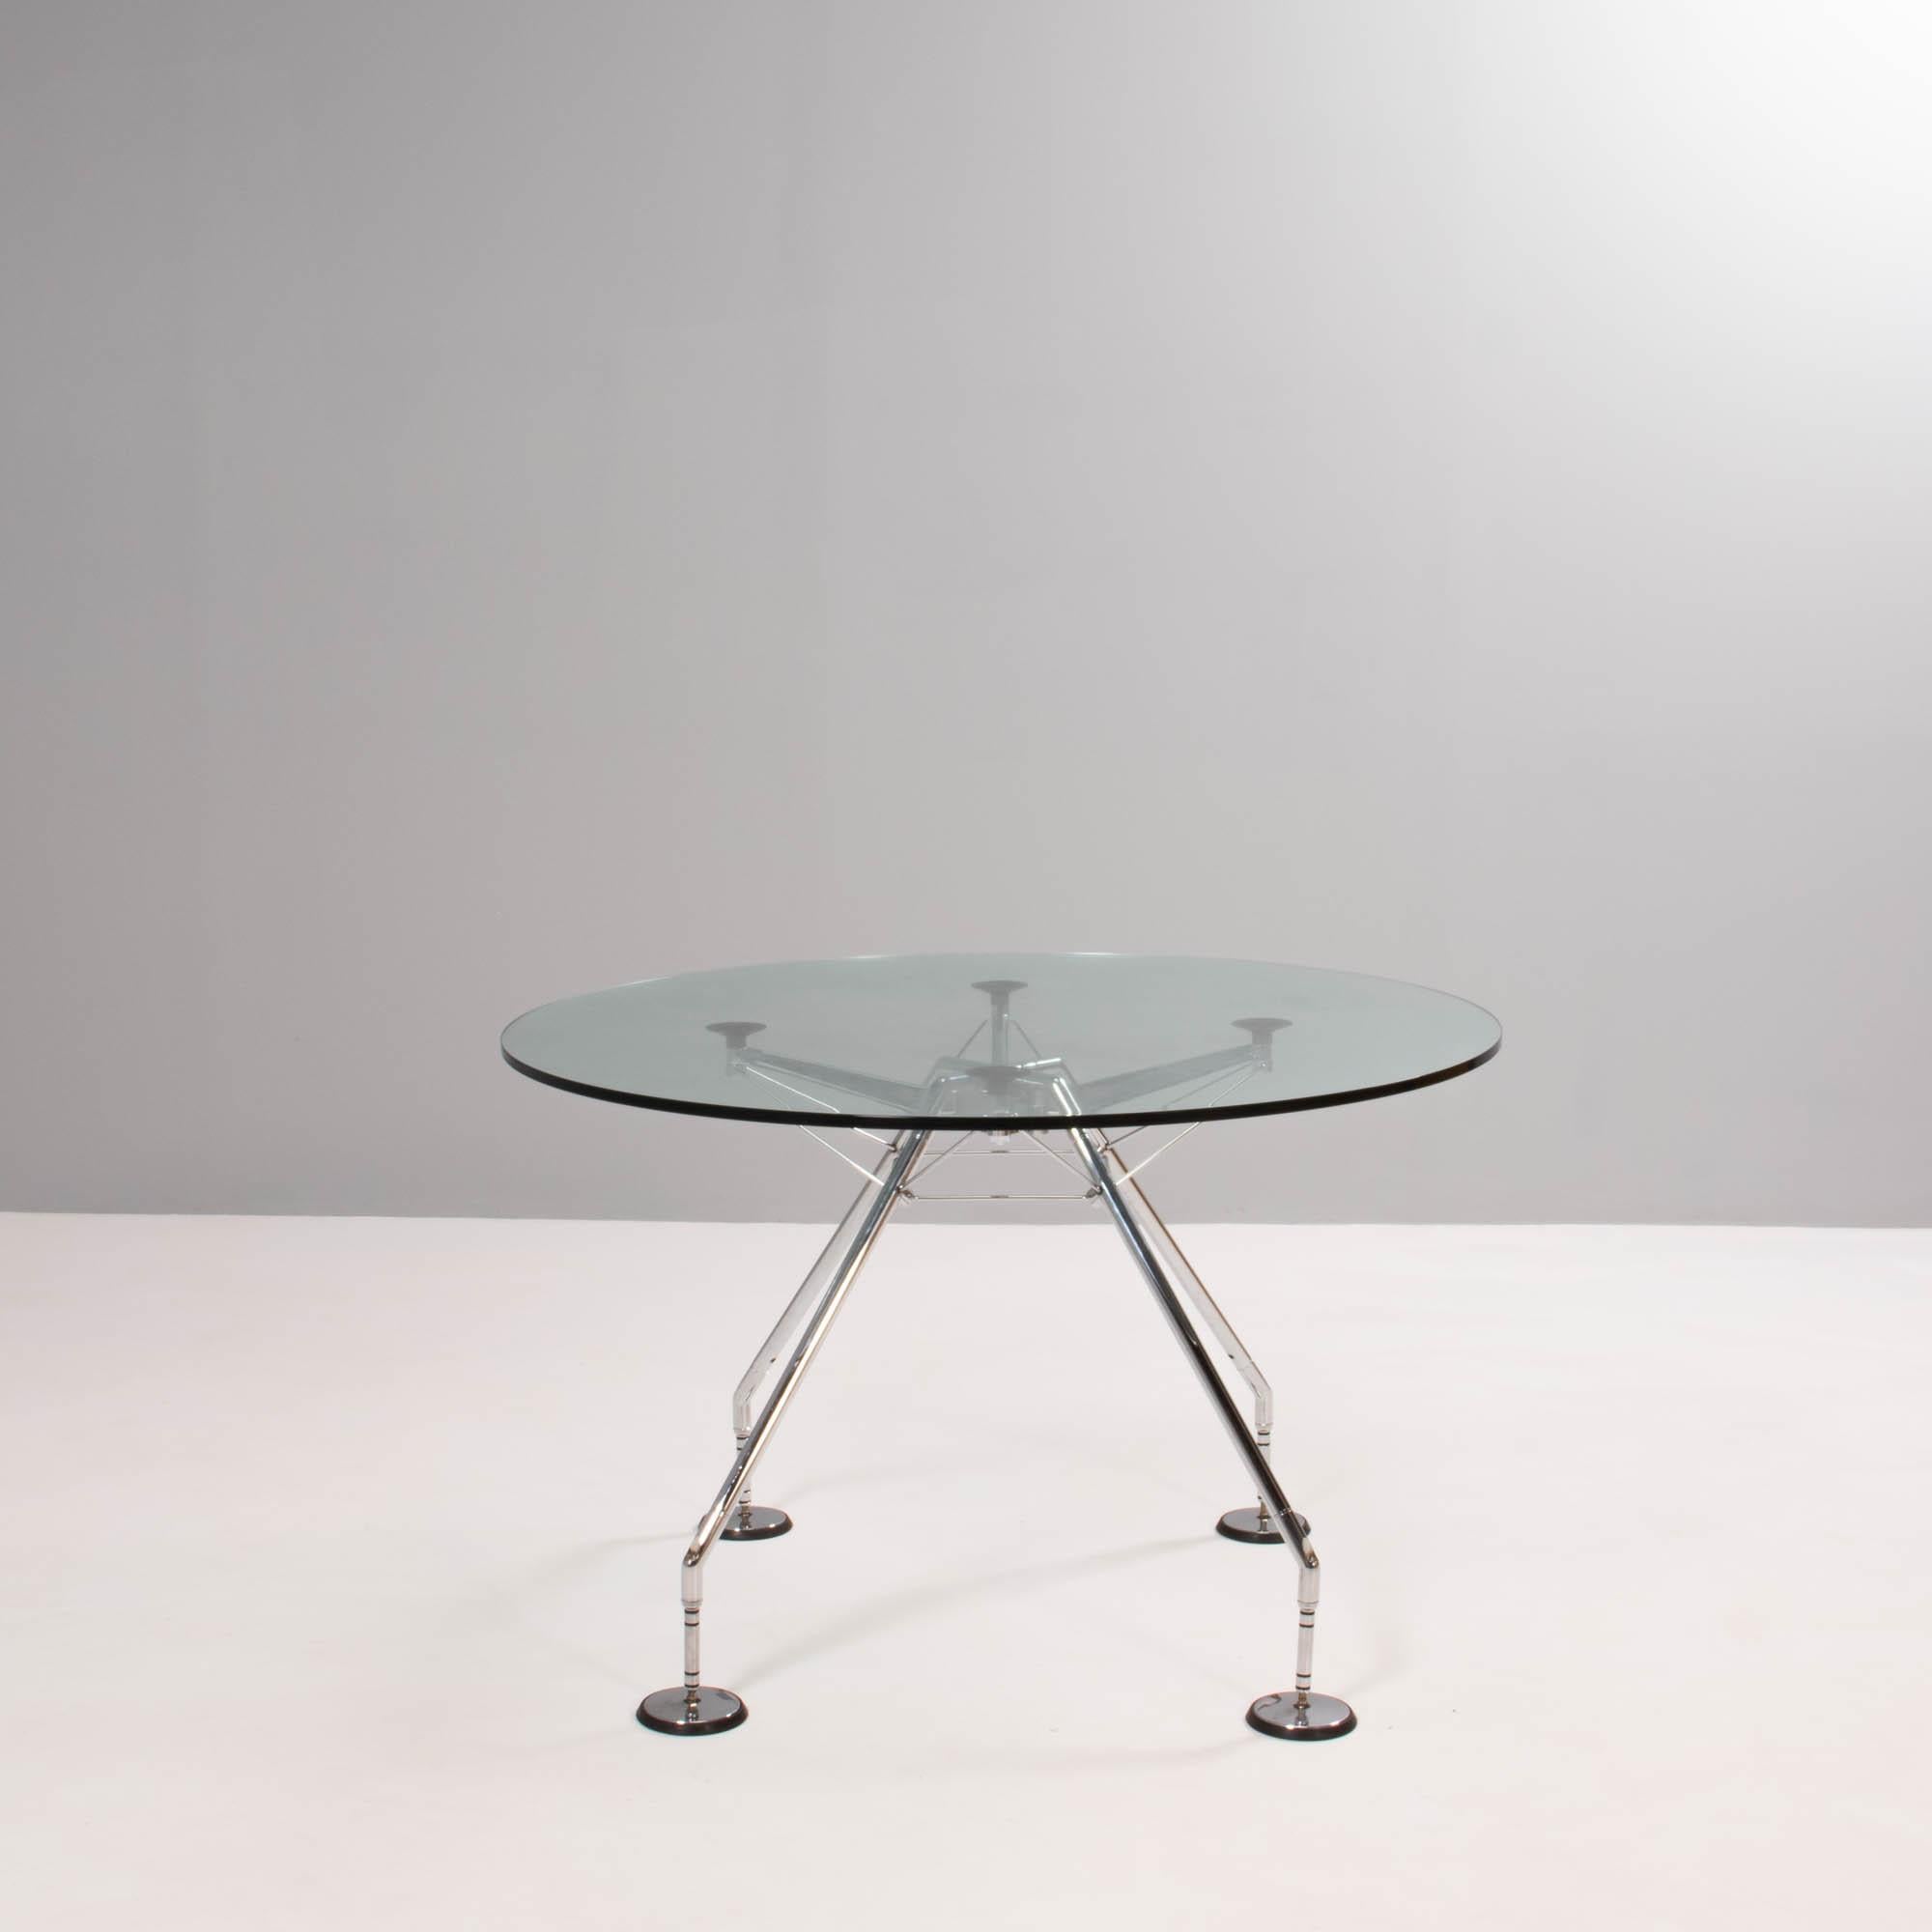 Conçue à l'origine par Sir Norman Foster en 1986, la table Nomos présente une esthétique industrielle post-moderniste.

Conçue comme un squelette zoomorphe, la base est le véritable point focal du design, et le plateau en verre transparent permet